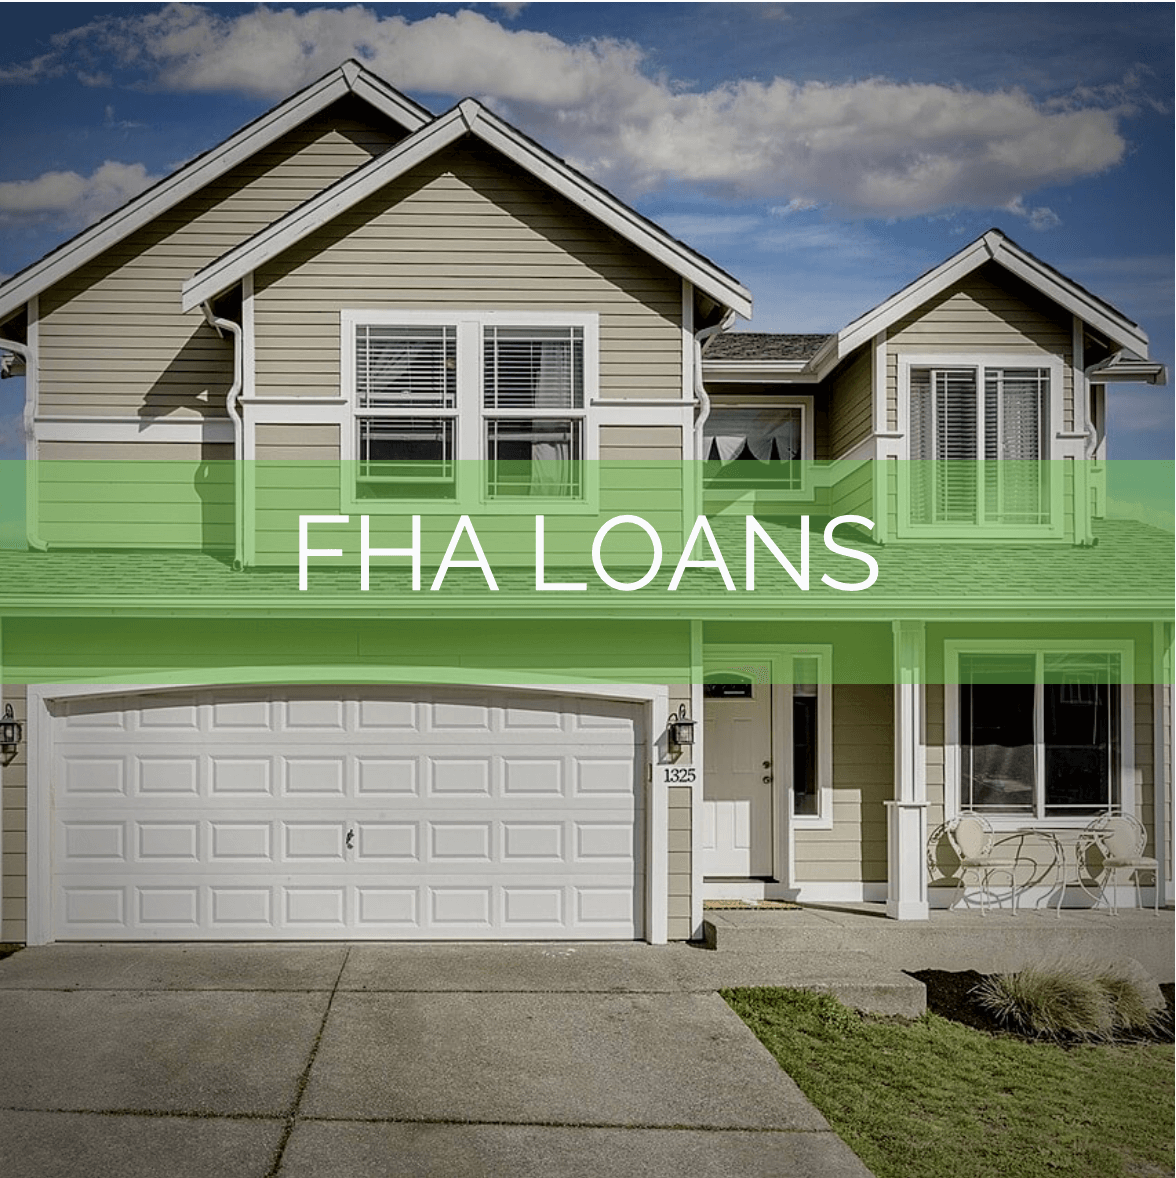 FHA Loans Colorado